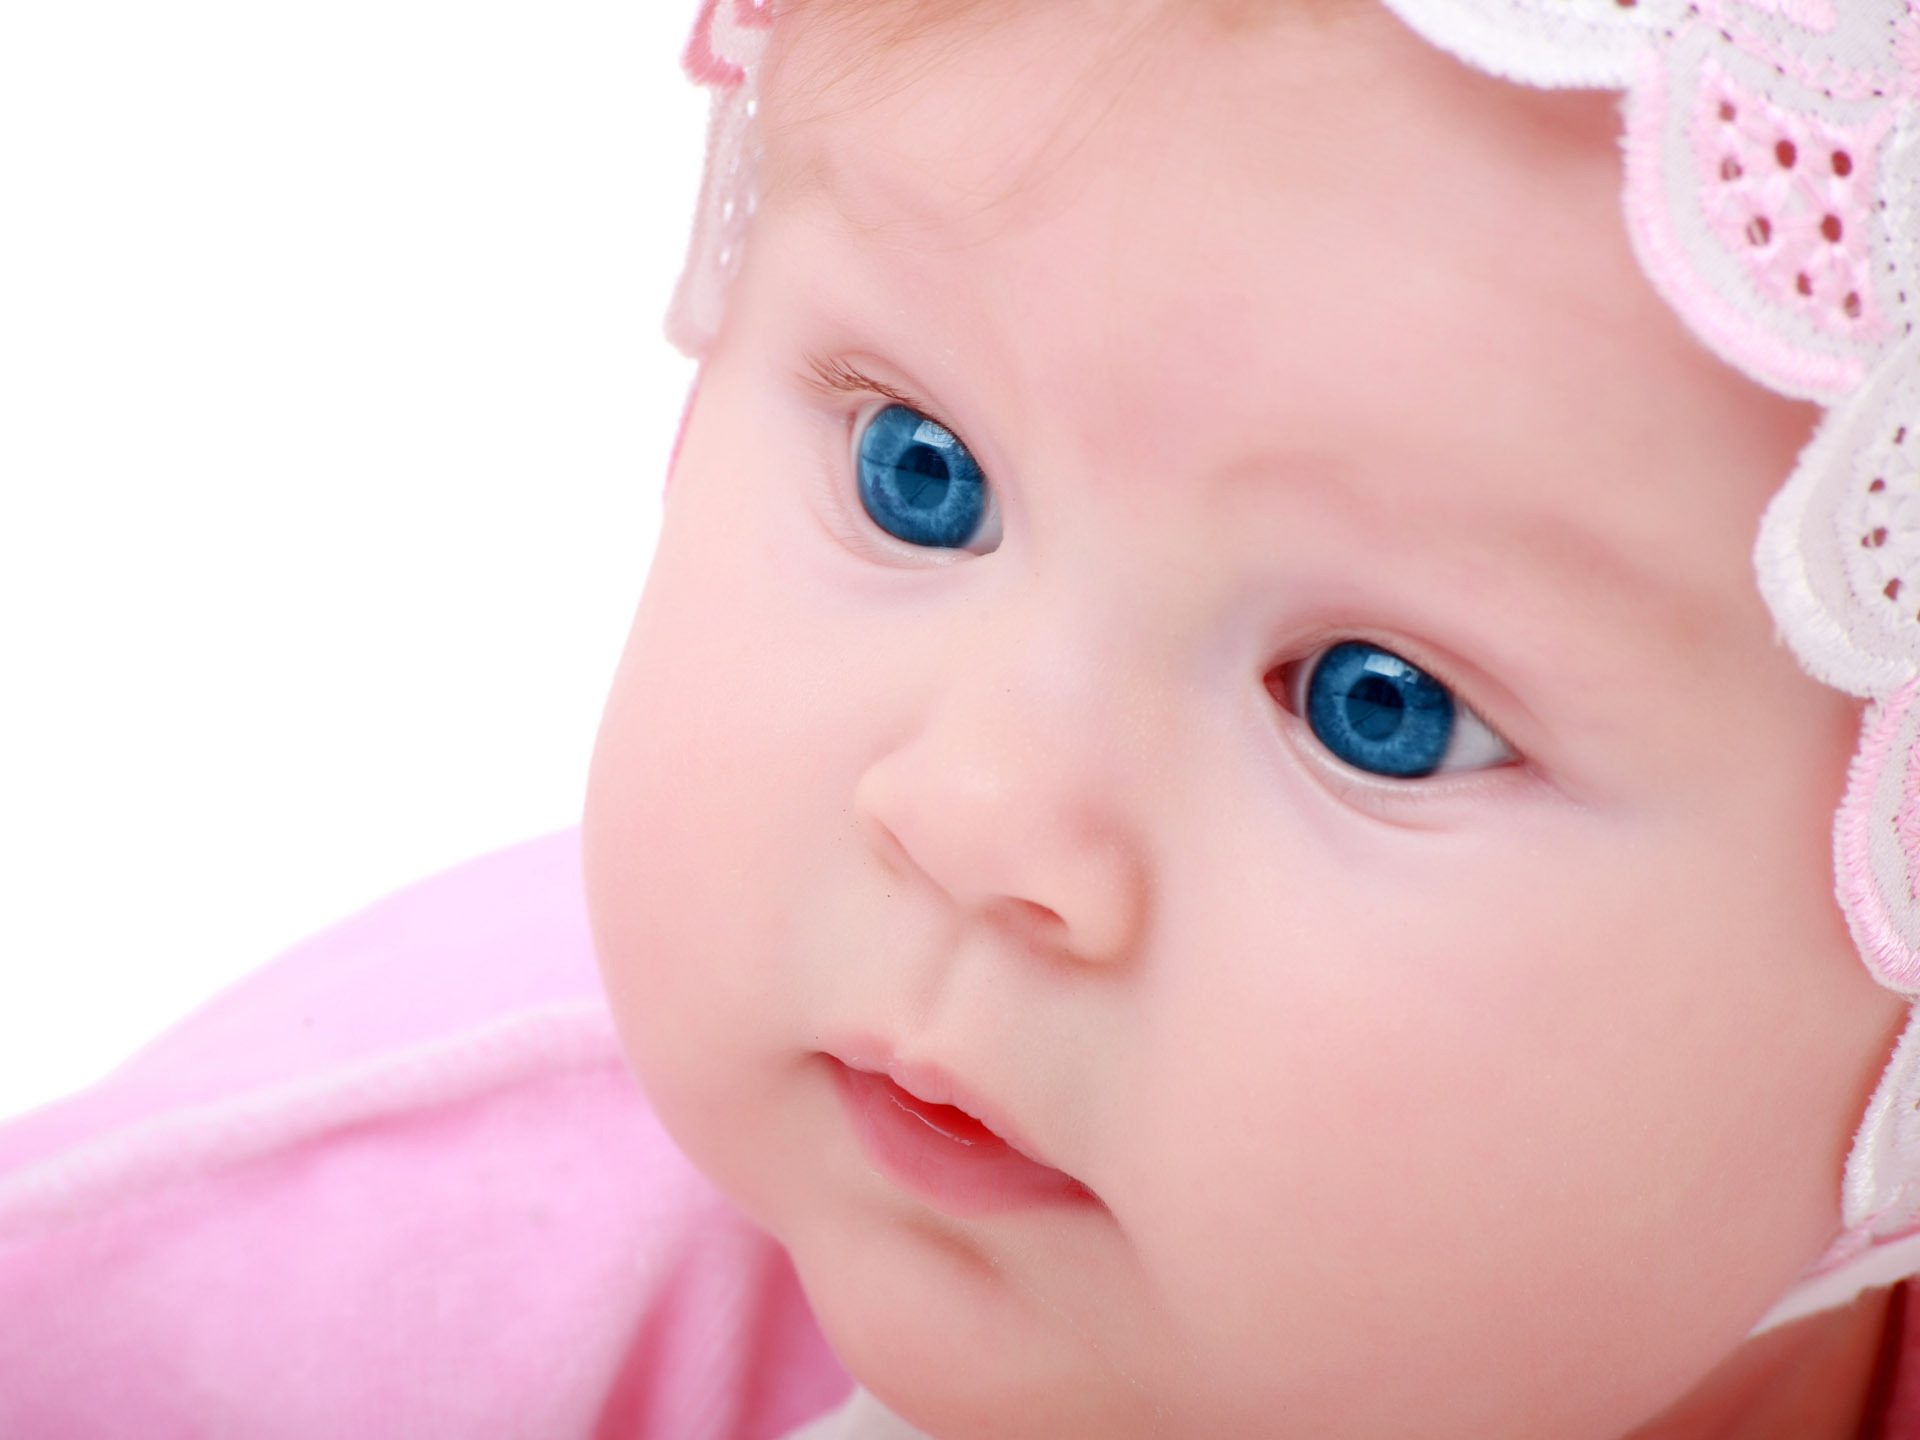 Blue eyes baby - Sweety Babies Photo (8885647) - Fanpop